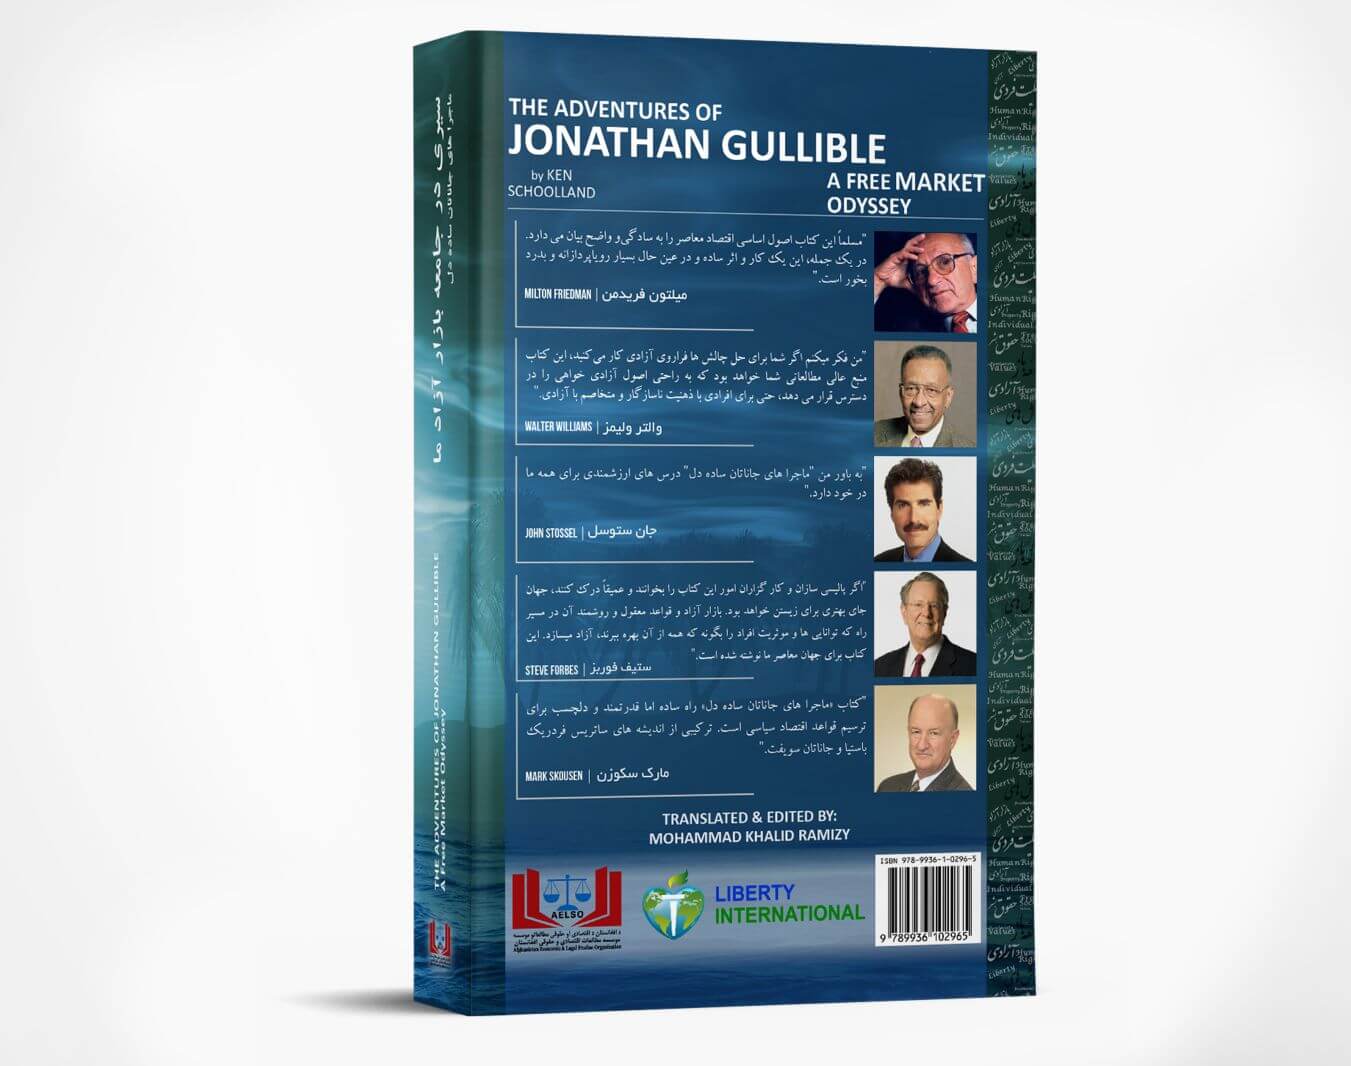 The Dari Cover Design of JG Book